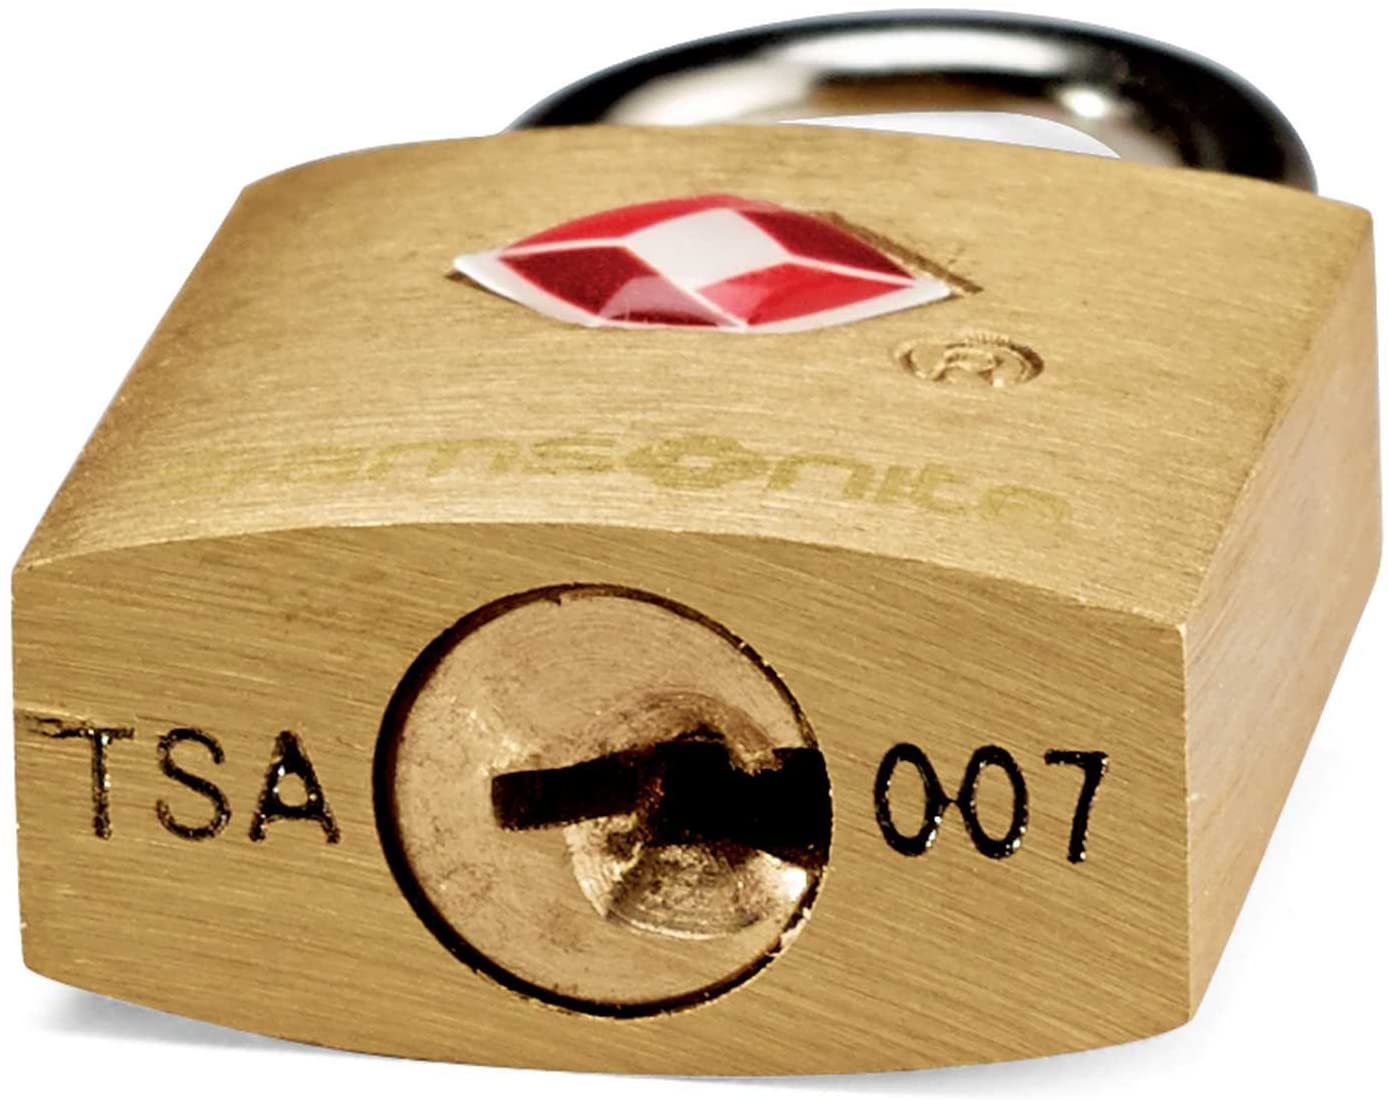 Samsonite Travel Sentry Brass Key Locks (Set of 2)